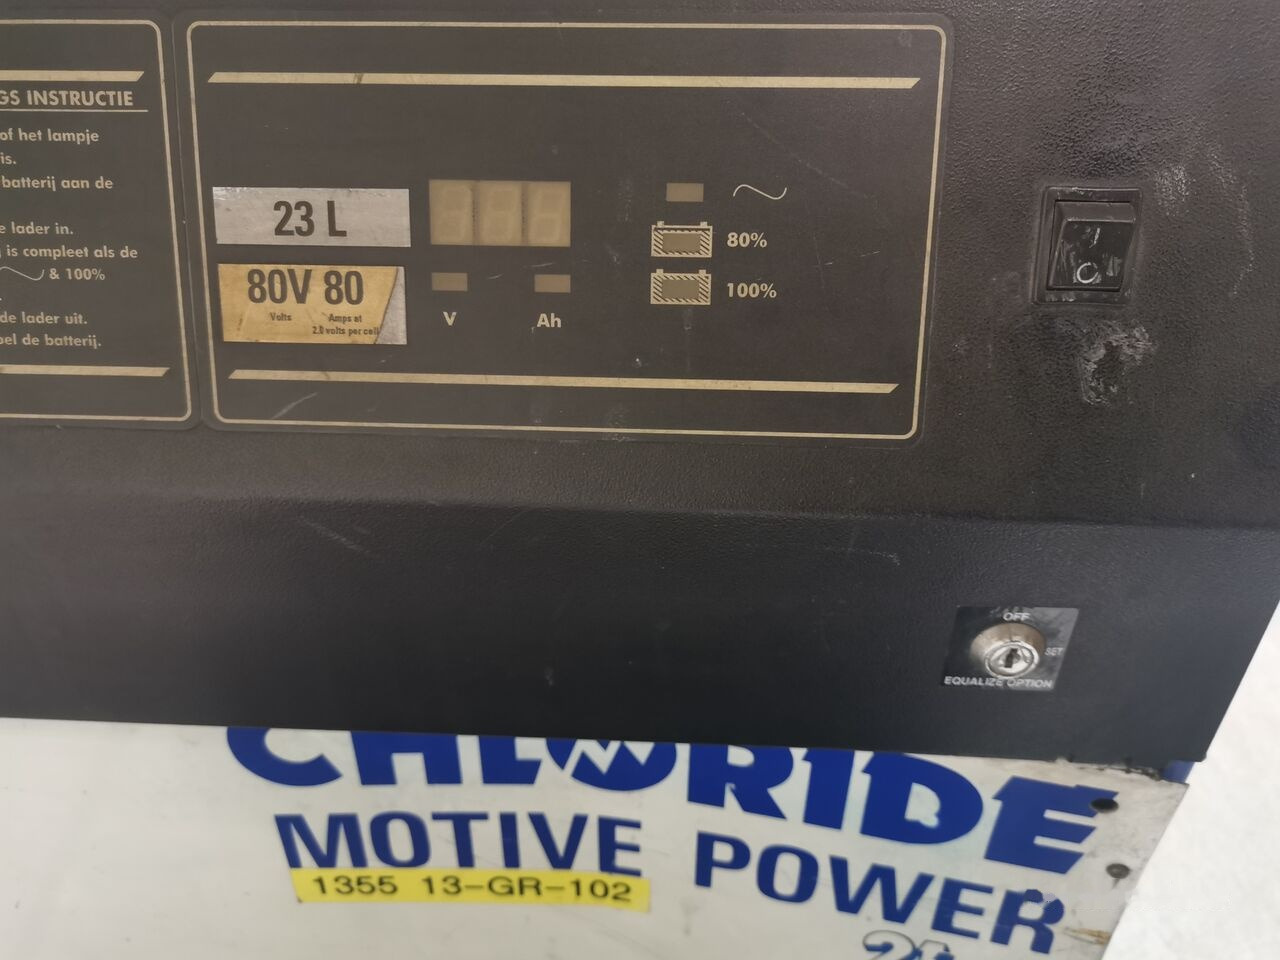 Acumulador para Carretilla elevadora CHLORIDE  for Linde Charger Chloride motive power 21lm 80V 80A 23L 230V electric forklift: foto 2